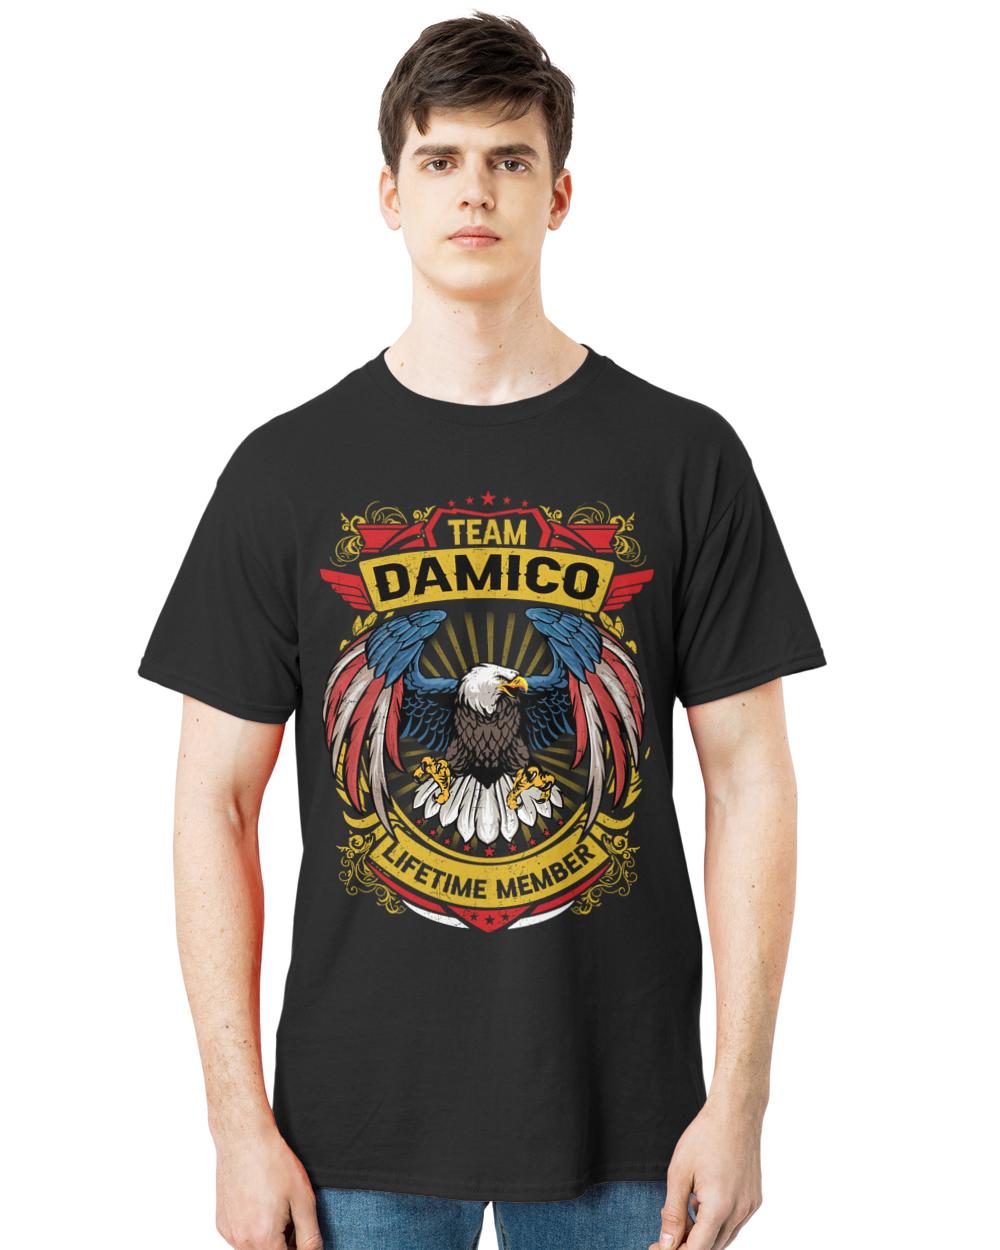 DAMICO-13K-N3-01